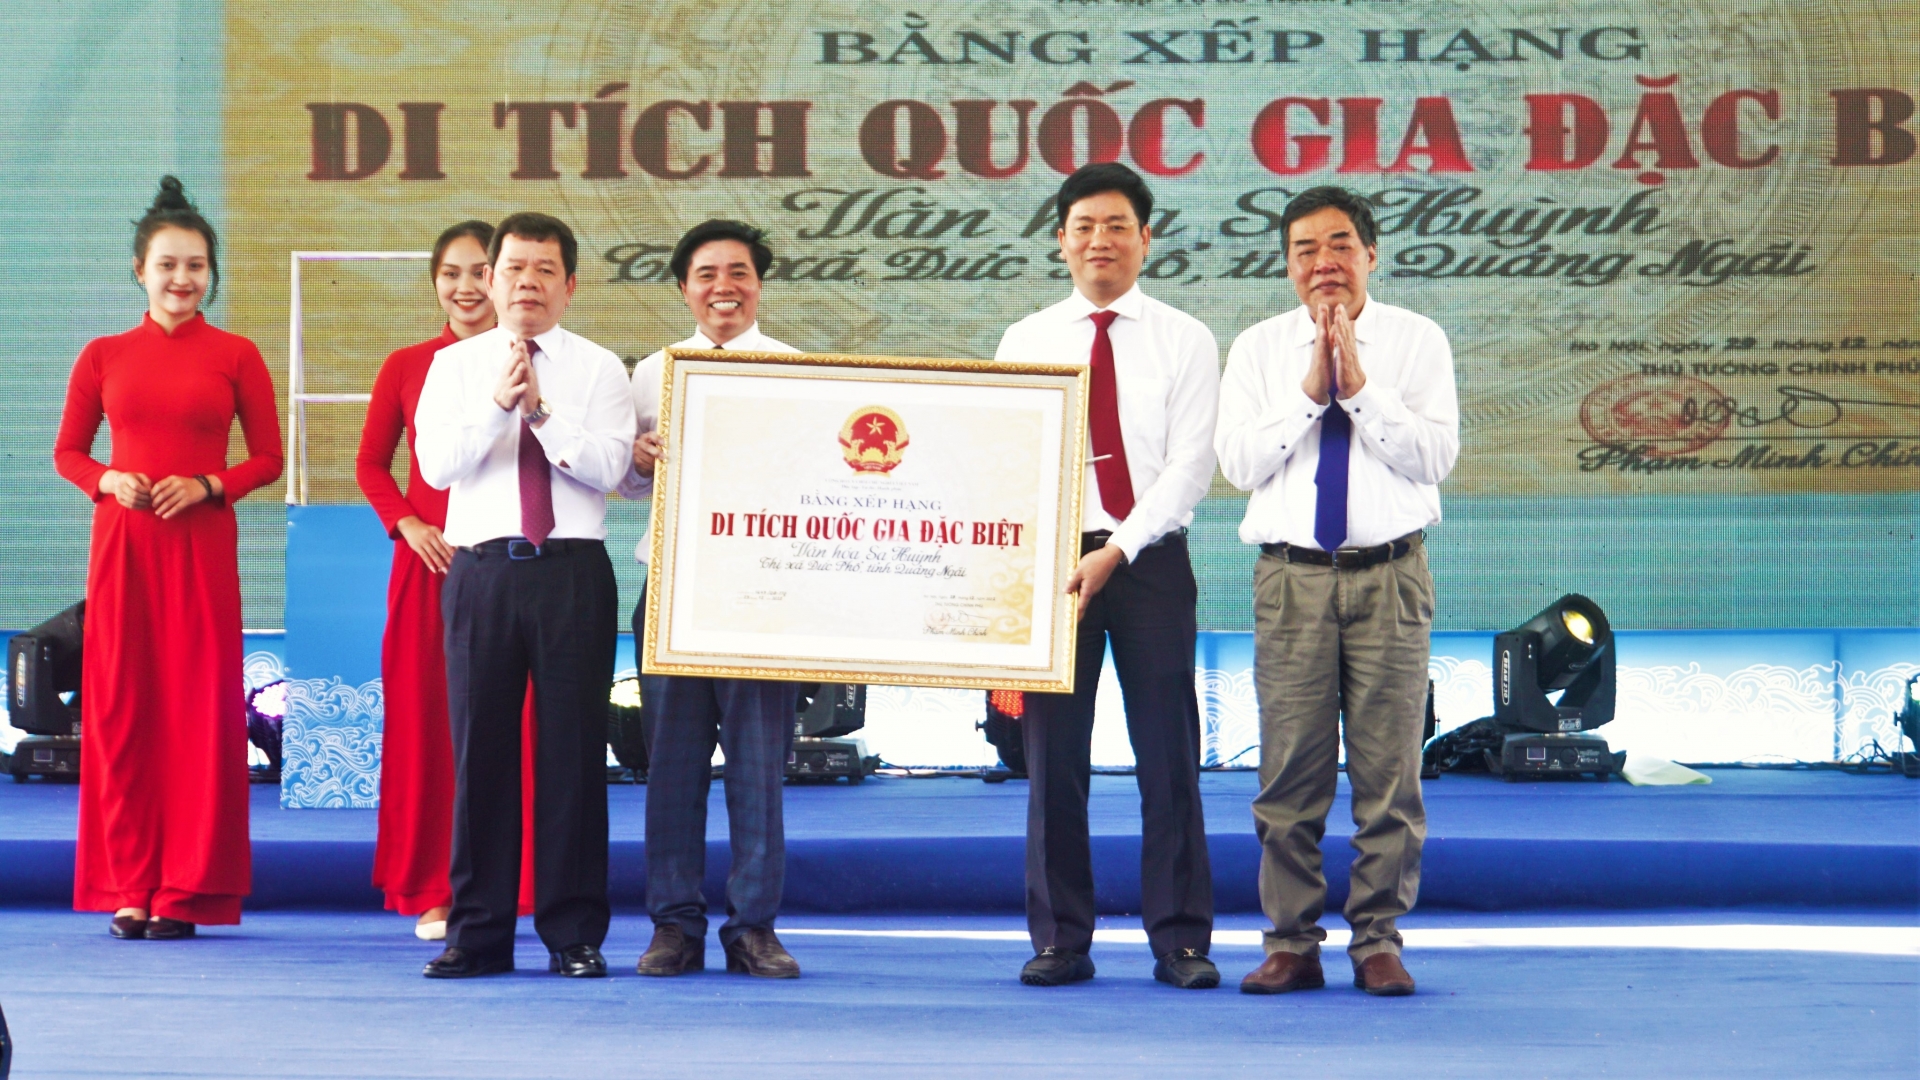 Lễ công bố và đón nhận Bằng xếp hạng Di tích Quốc gia đặc biệt Văn hoá Sa Huỳnh.